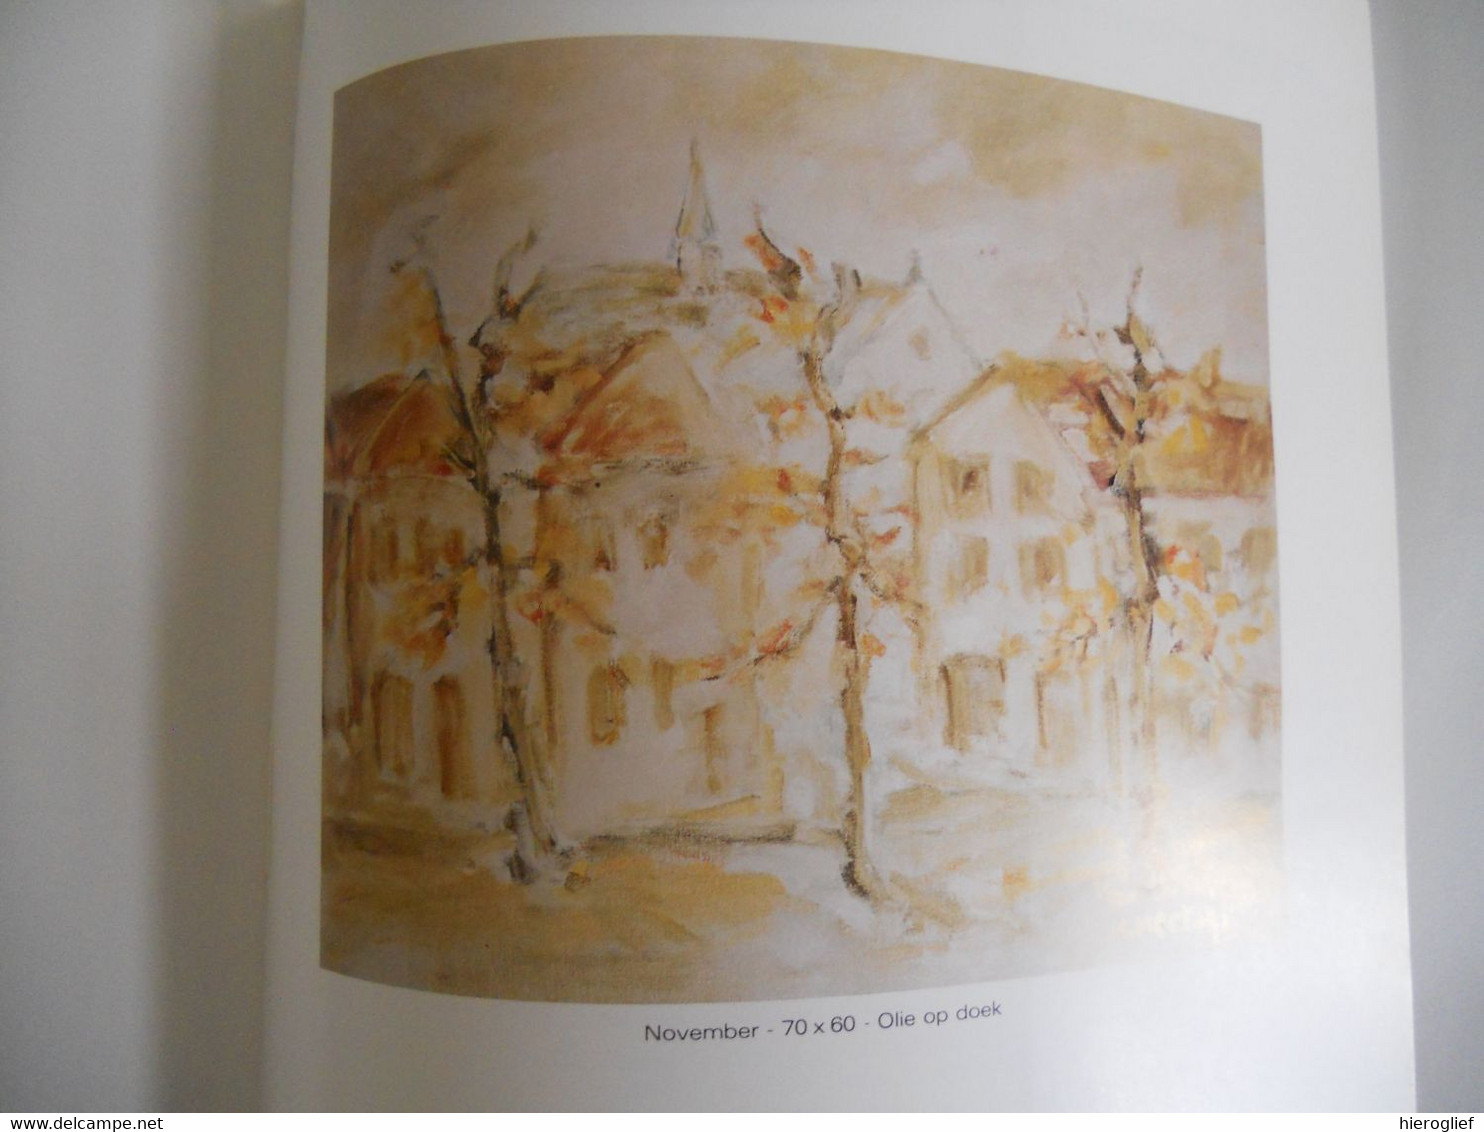 HERMAN HERTOGS monografie door Walter de Taye Sint-Lenaarts / Antwerpen 1944 Schilder tekenaar pastellist docent